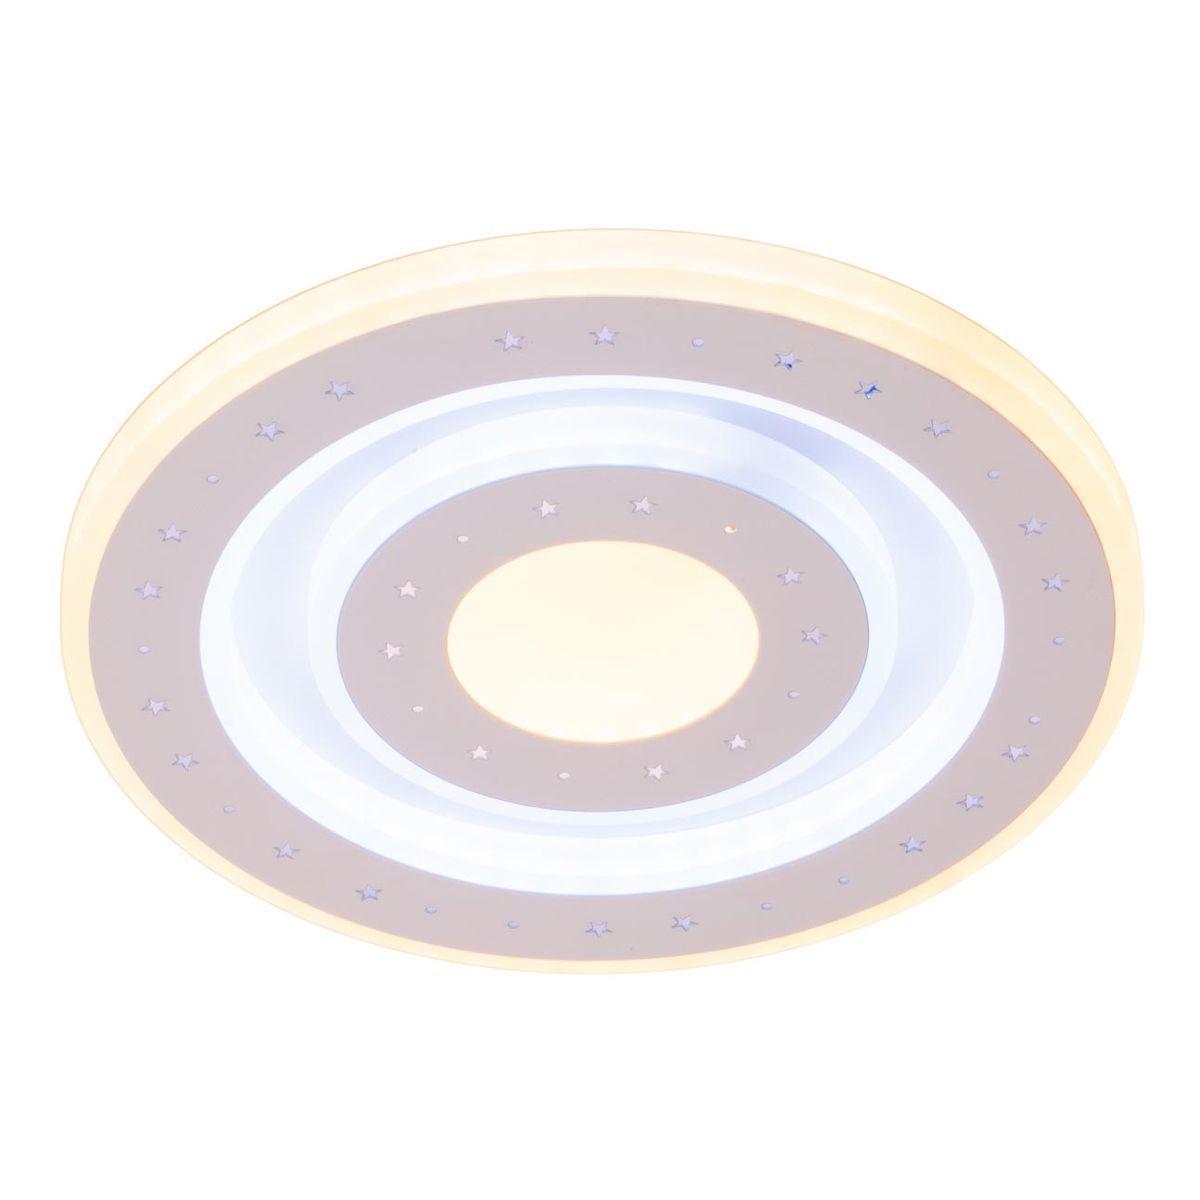 Настенно-потолочный светодиодный светильник IMEX PLW-3026-200 настенно потолочный светодиодный светильник imex plw 3026 200